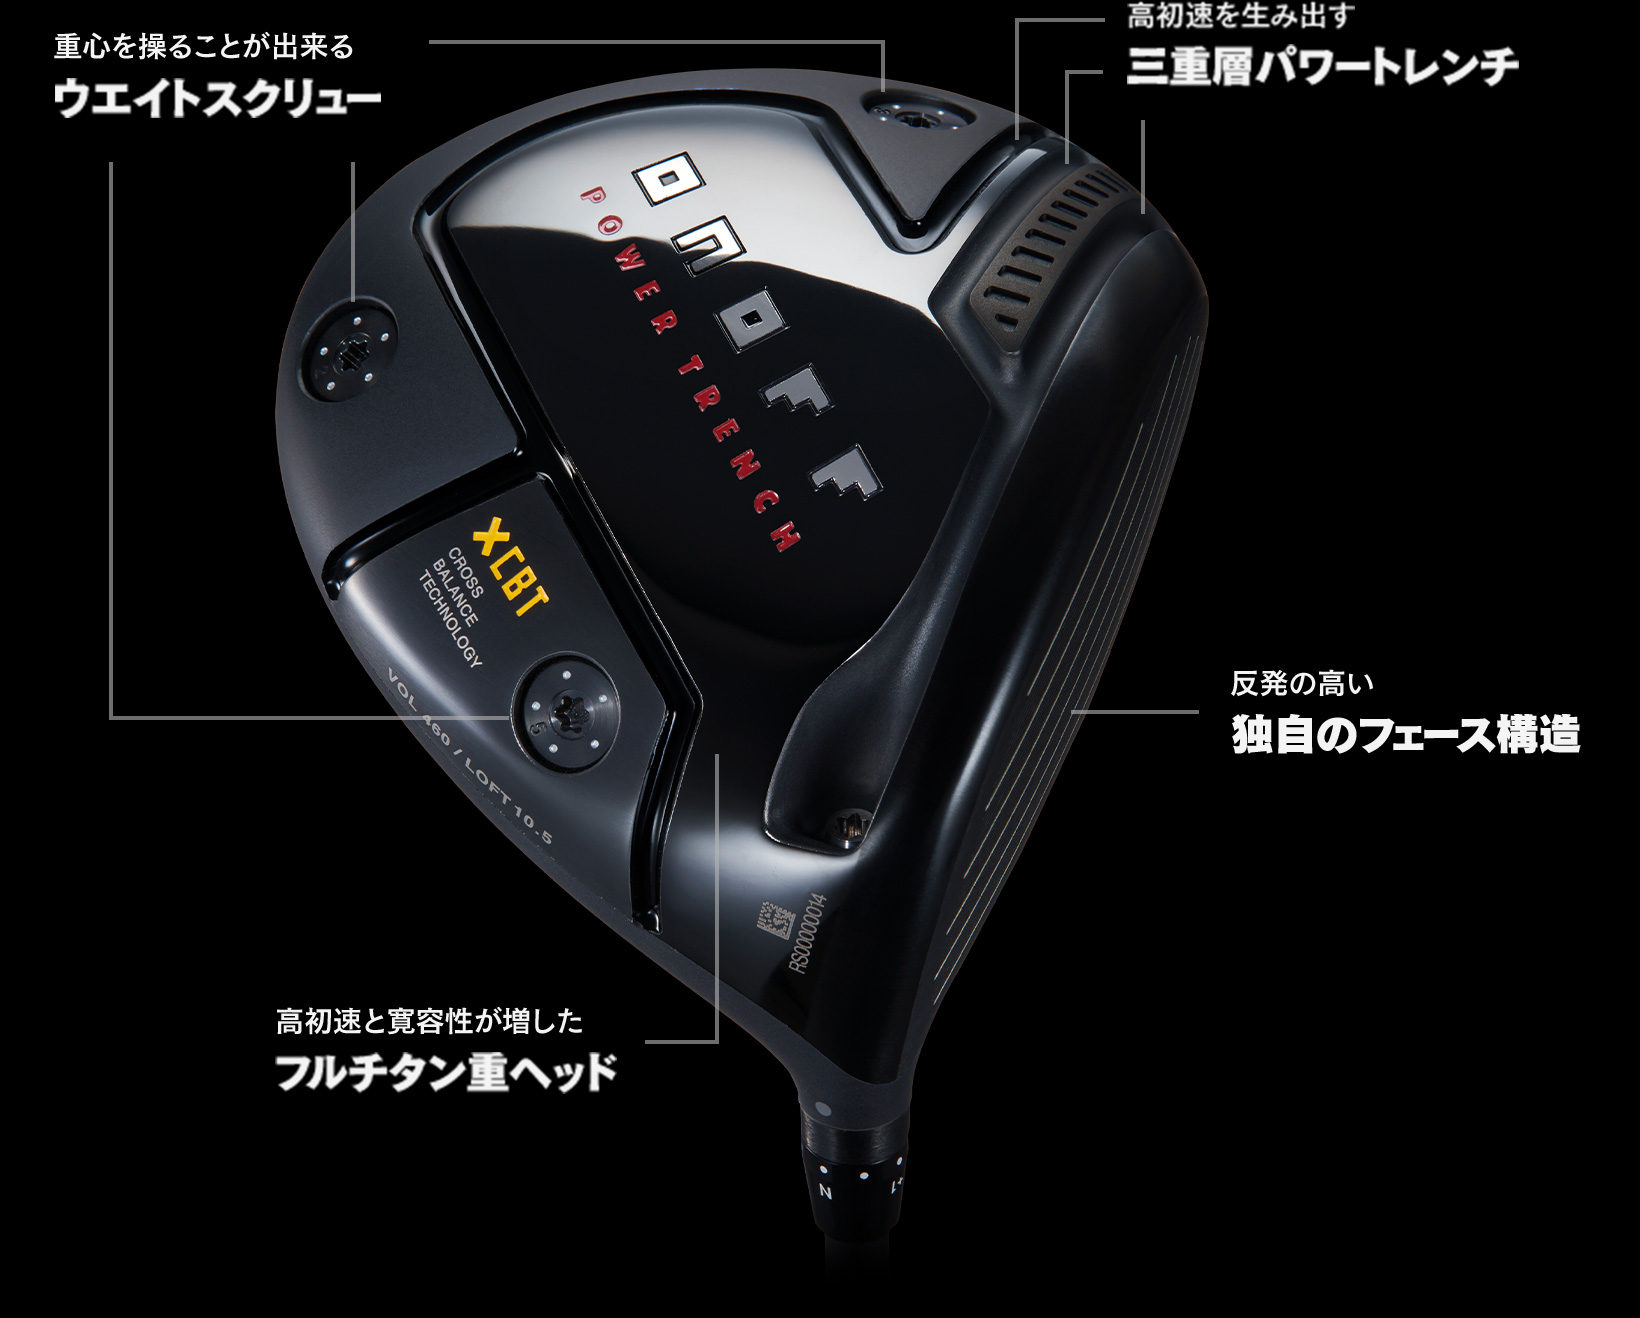 NEW モデル 新品 オノフ クロ ONOFF KURO 10.5度 ヘッド ドライバー